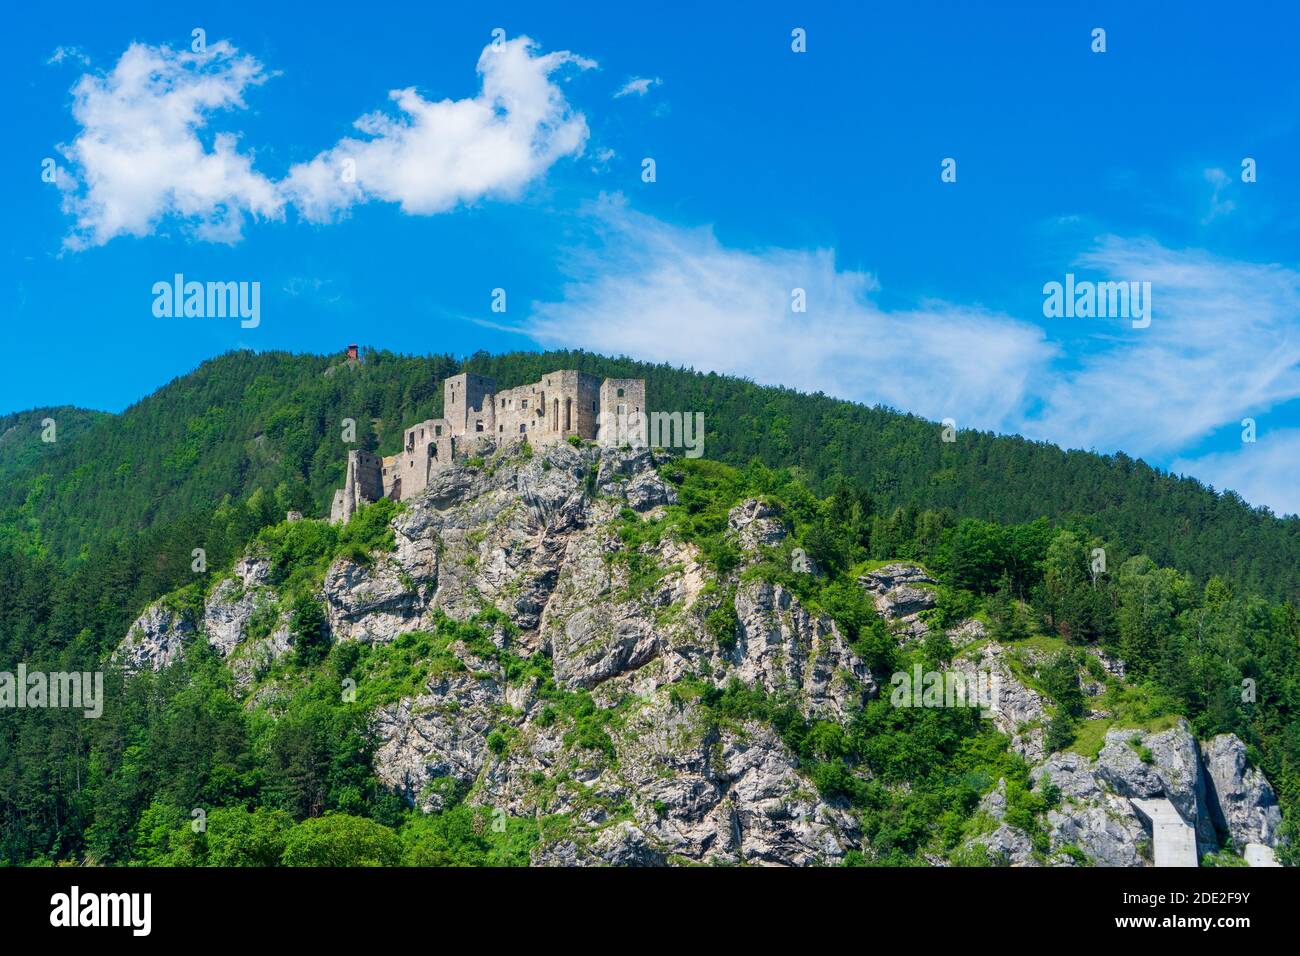 château de strecno dans le paysage de montagne d'été en slovaquie Banque D'Images